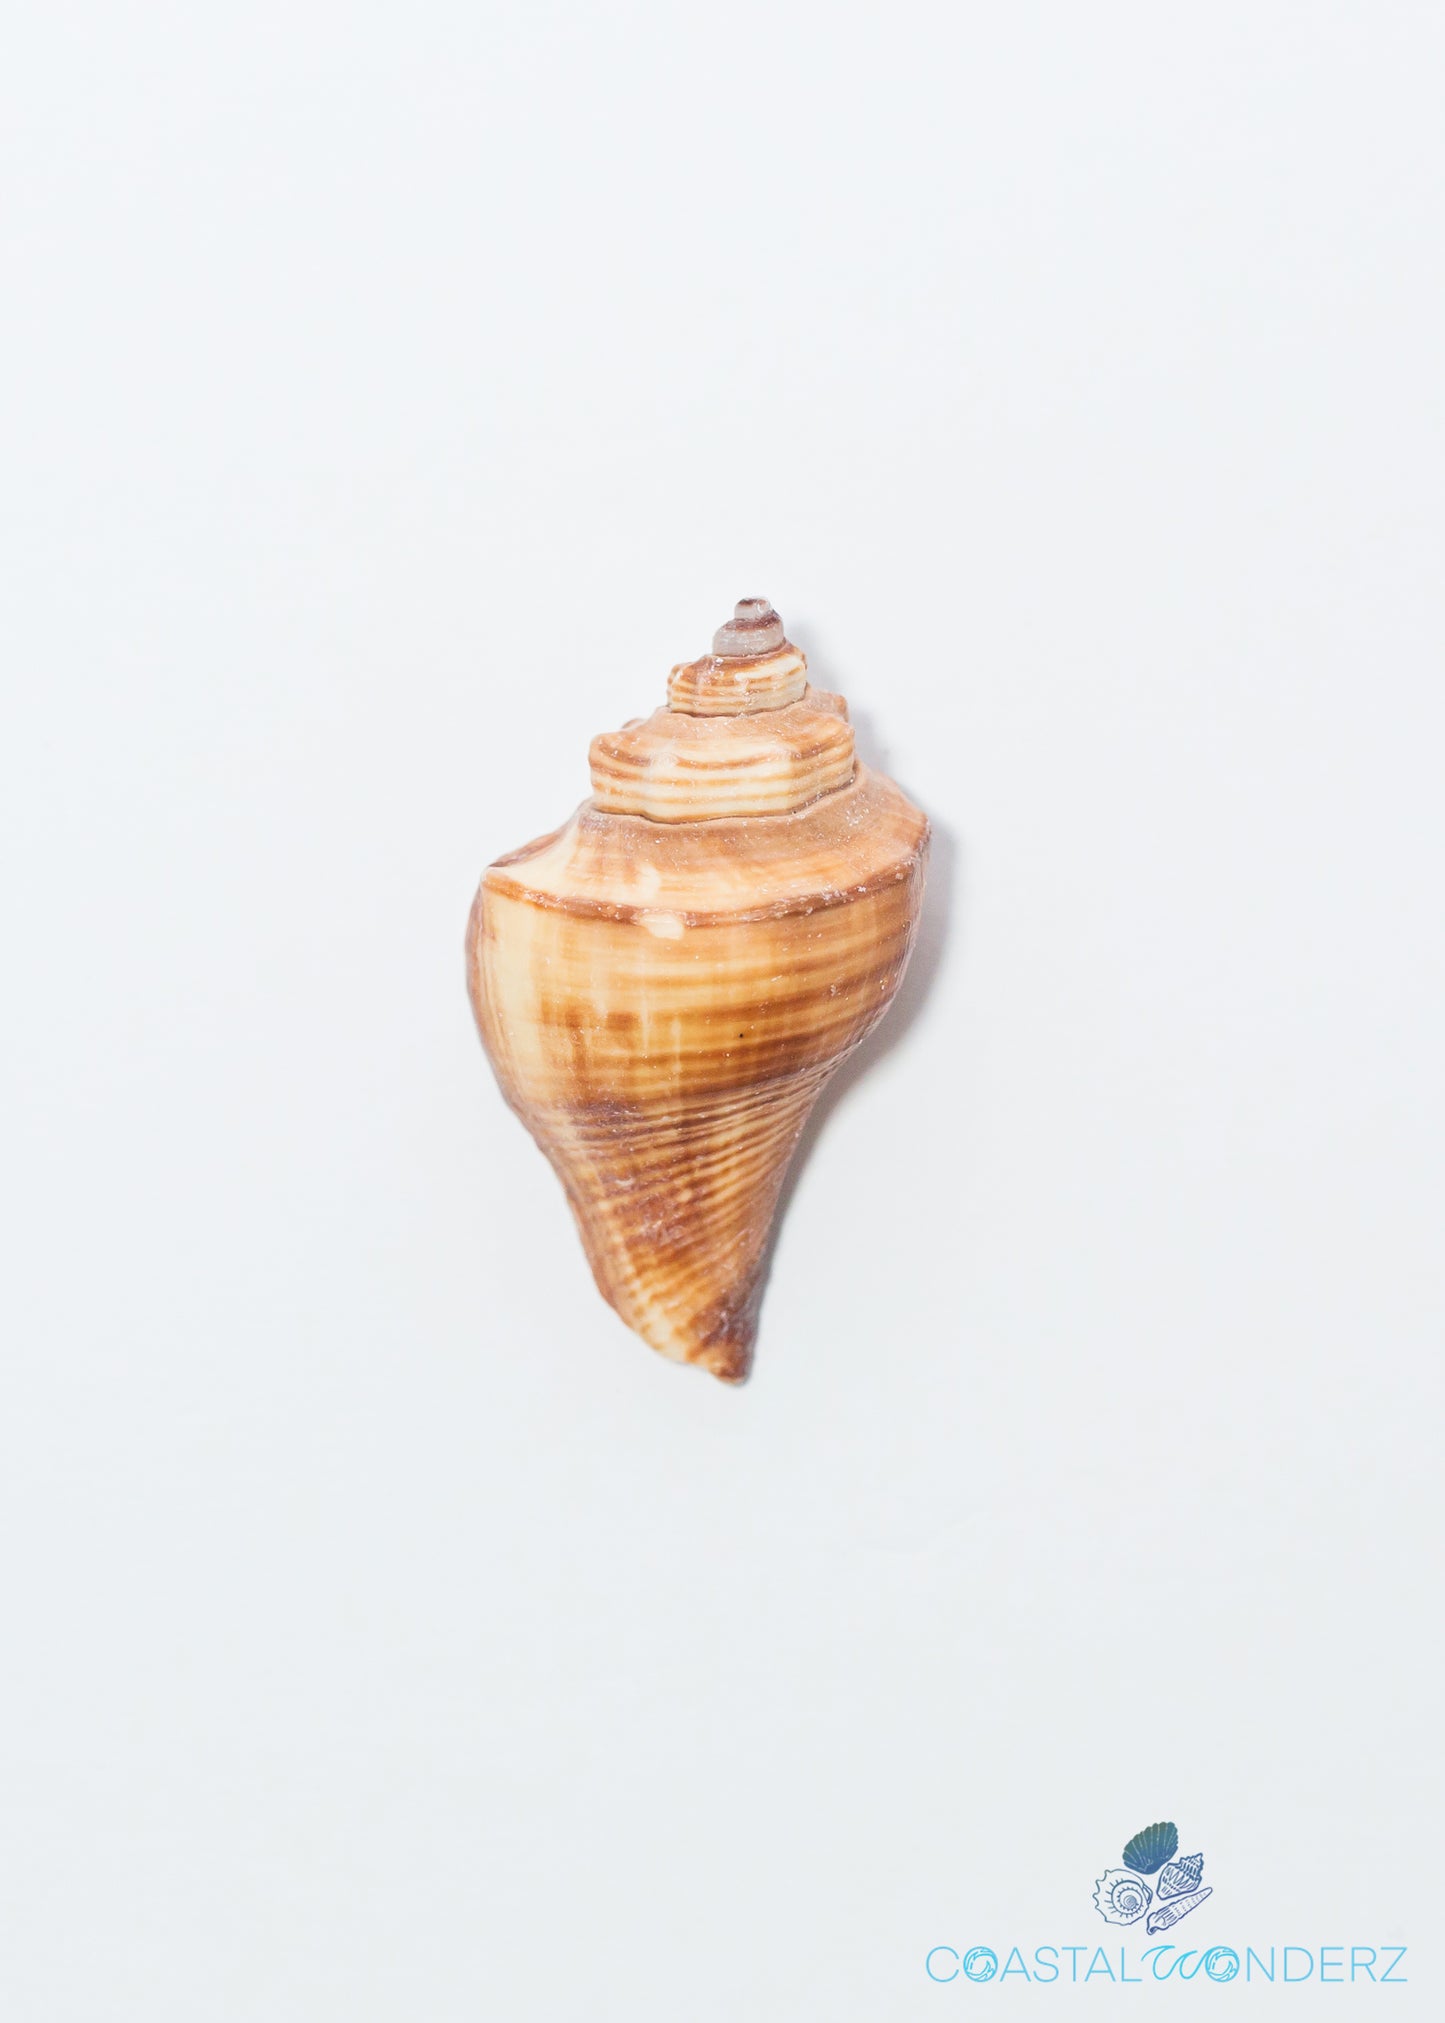 Vole Shell (Hemifusus Pugilinus)